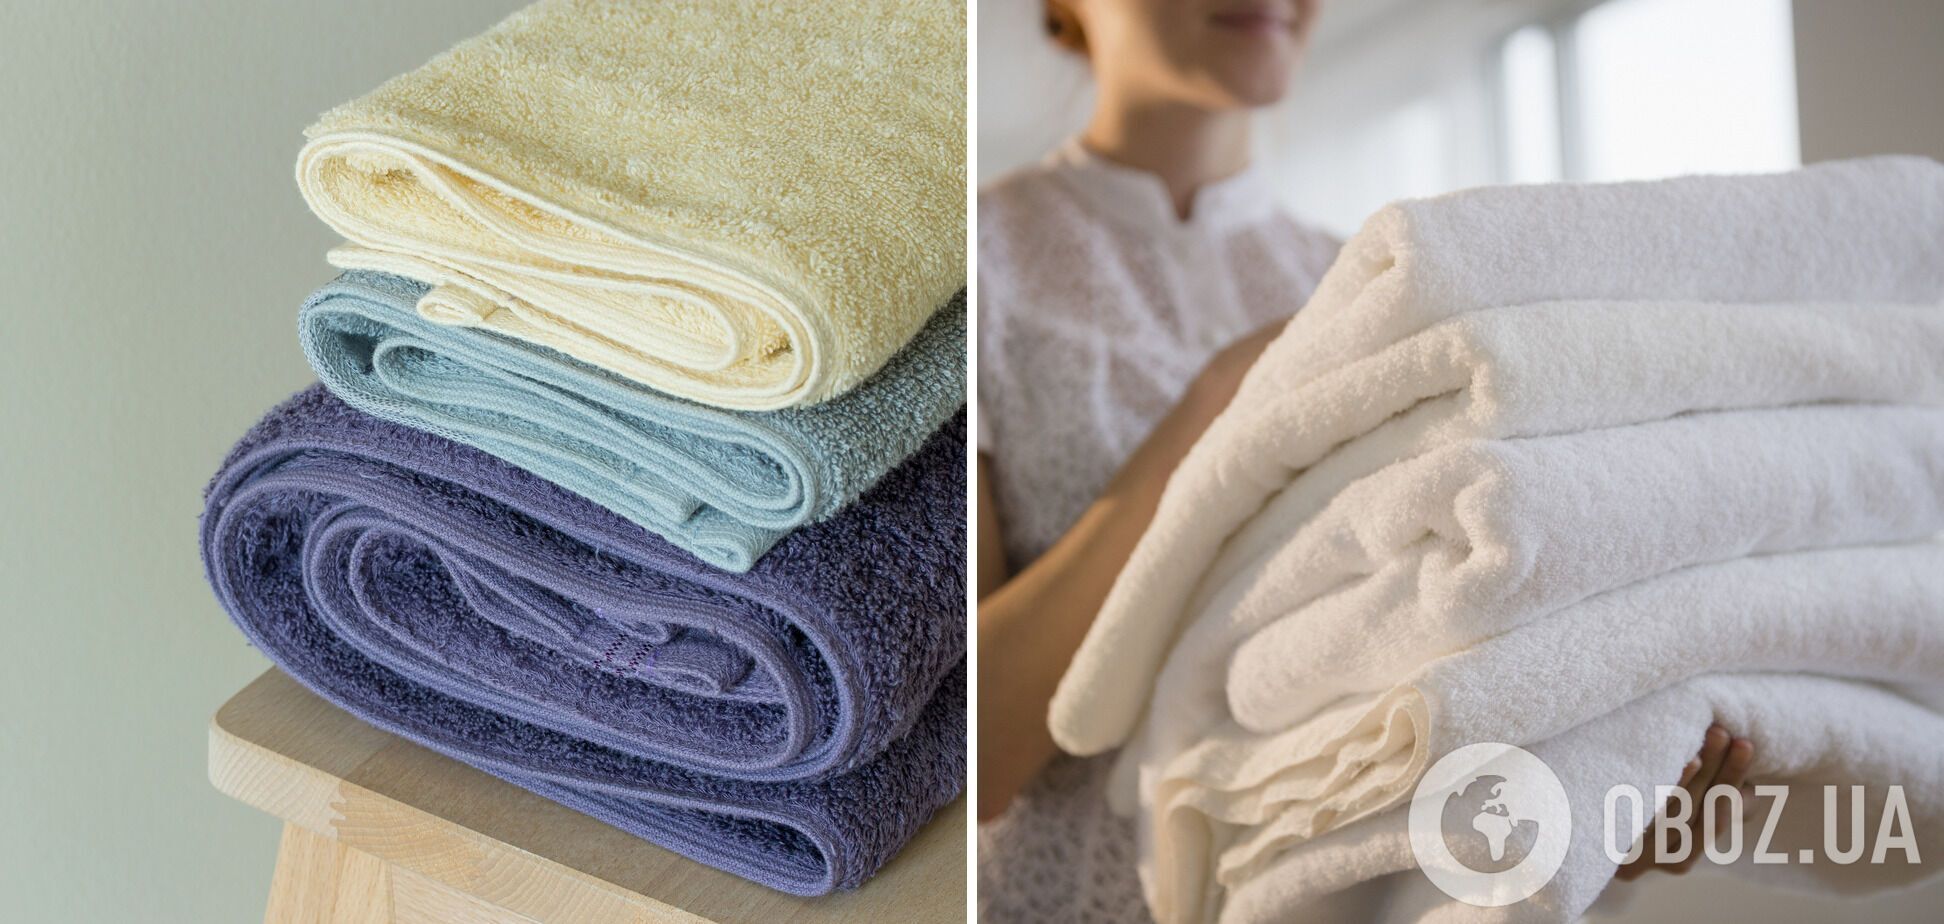 Забудьте о "жестких" полотенцах: названо идеальное средство, которое сделает их мягкими после стирки